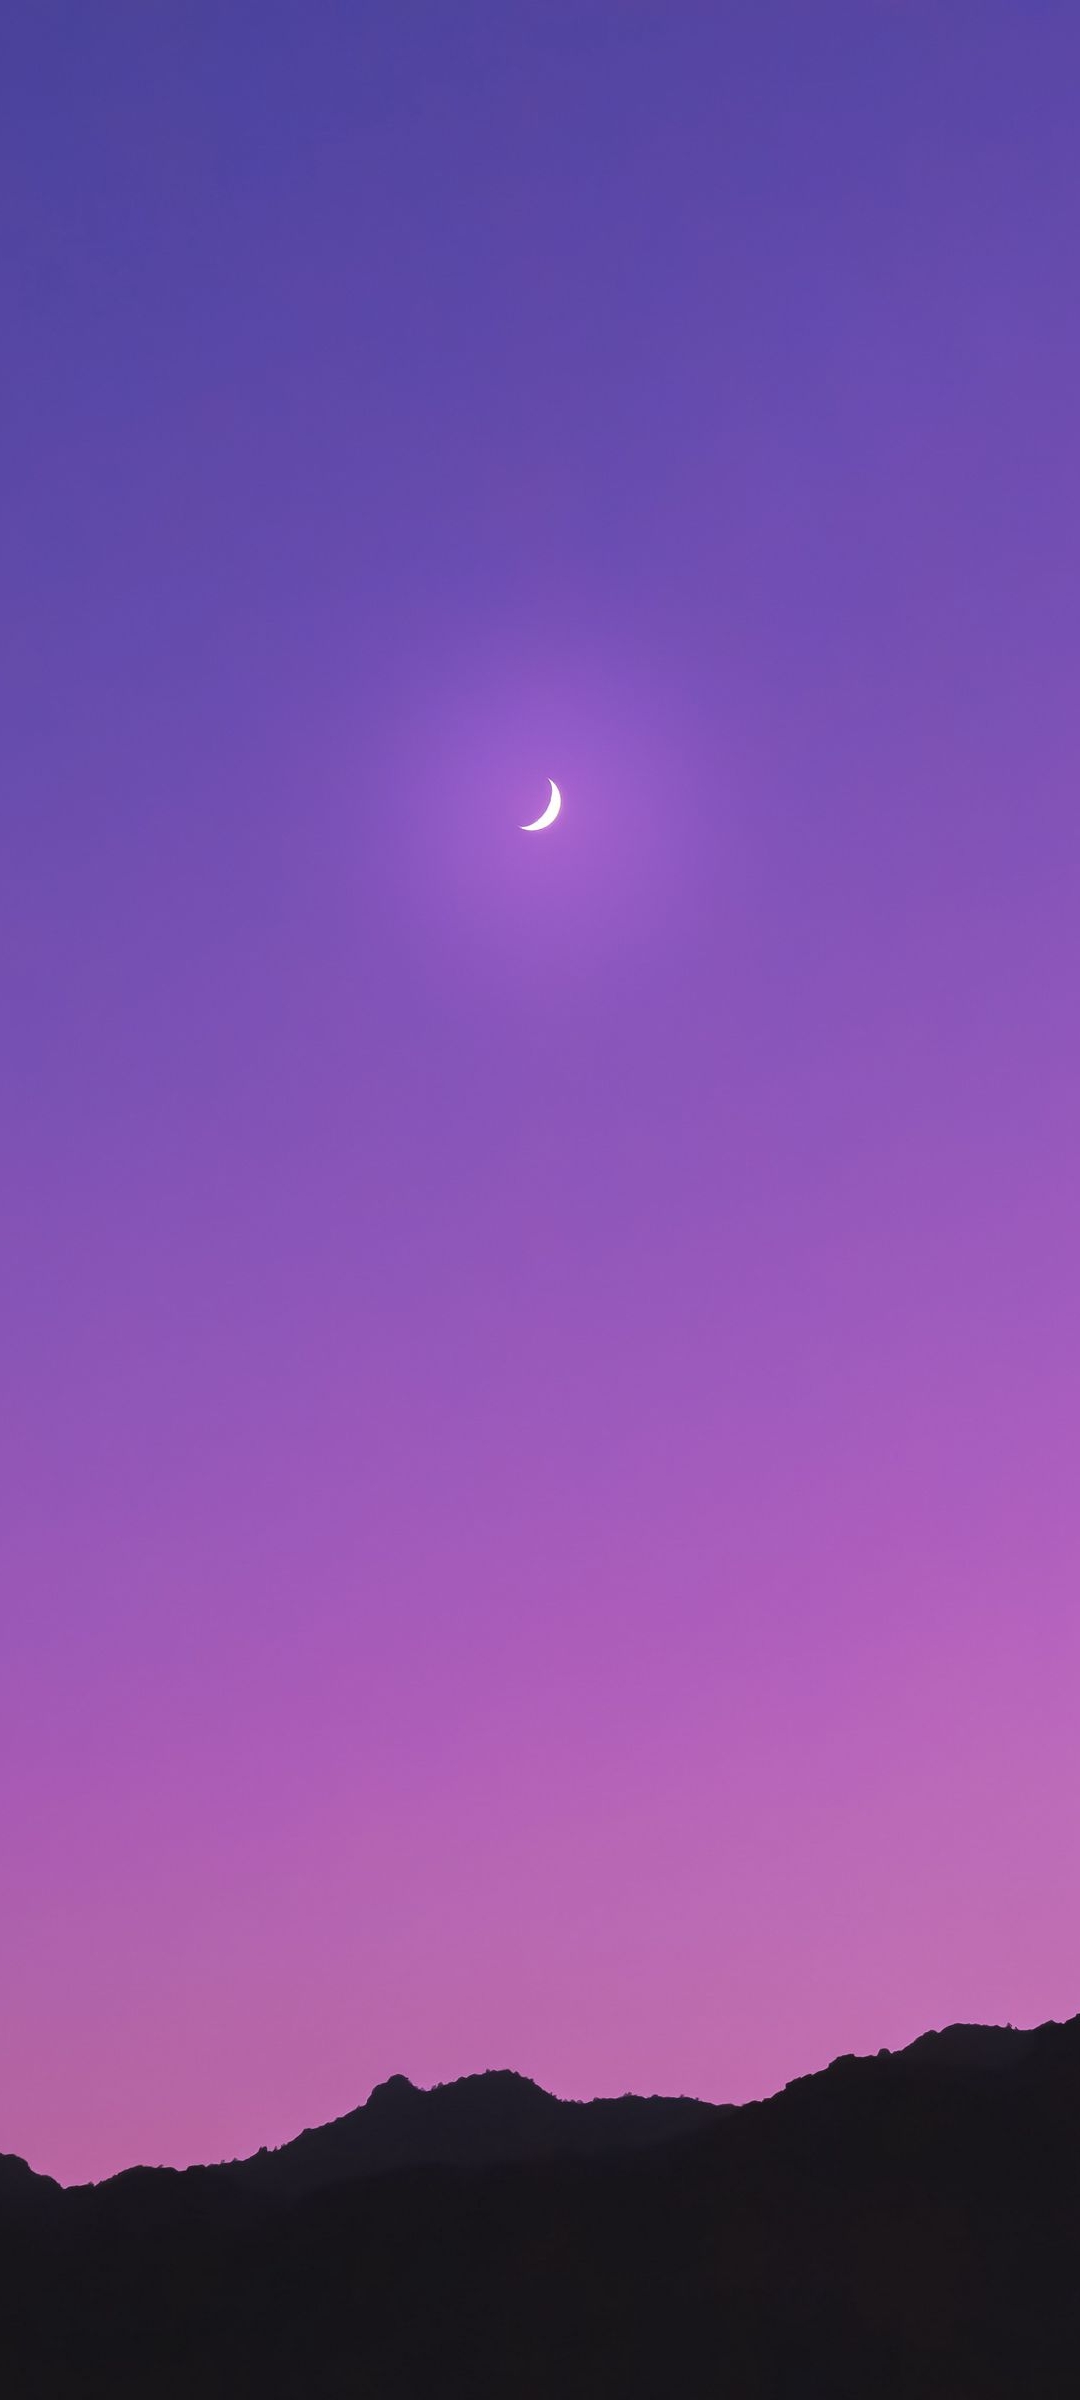 三日月 紫のグラデーションの空 黒い山 Redmi Note 9s Androidスマホ壁紙 待ち受け スマラン